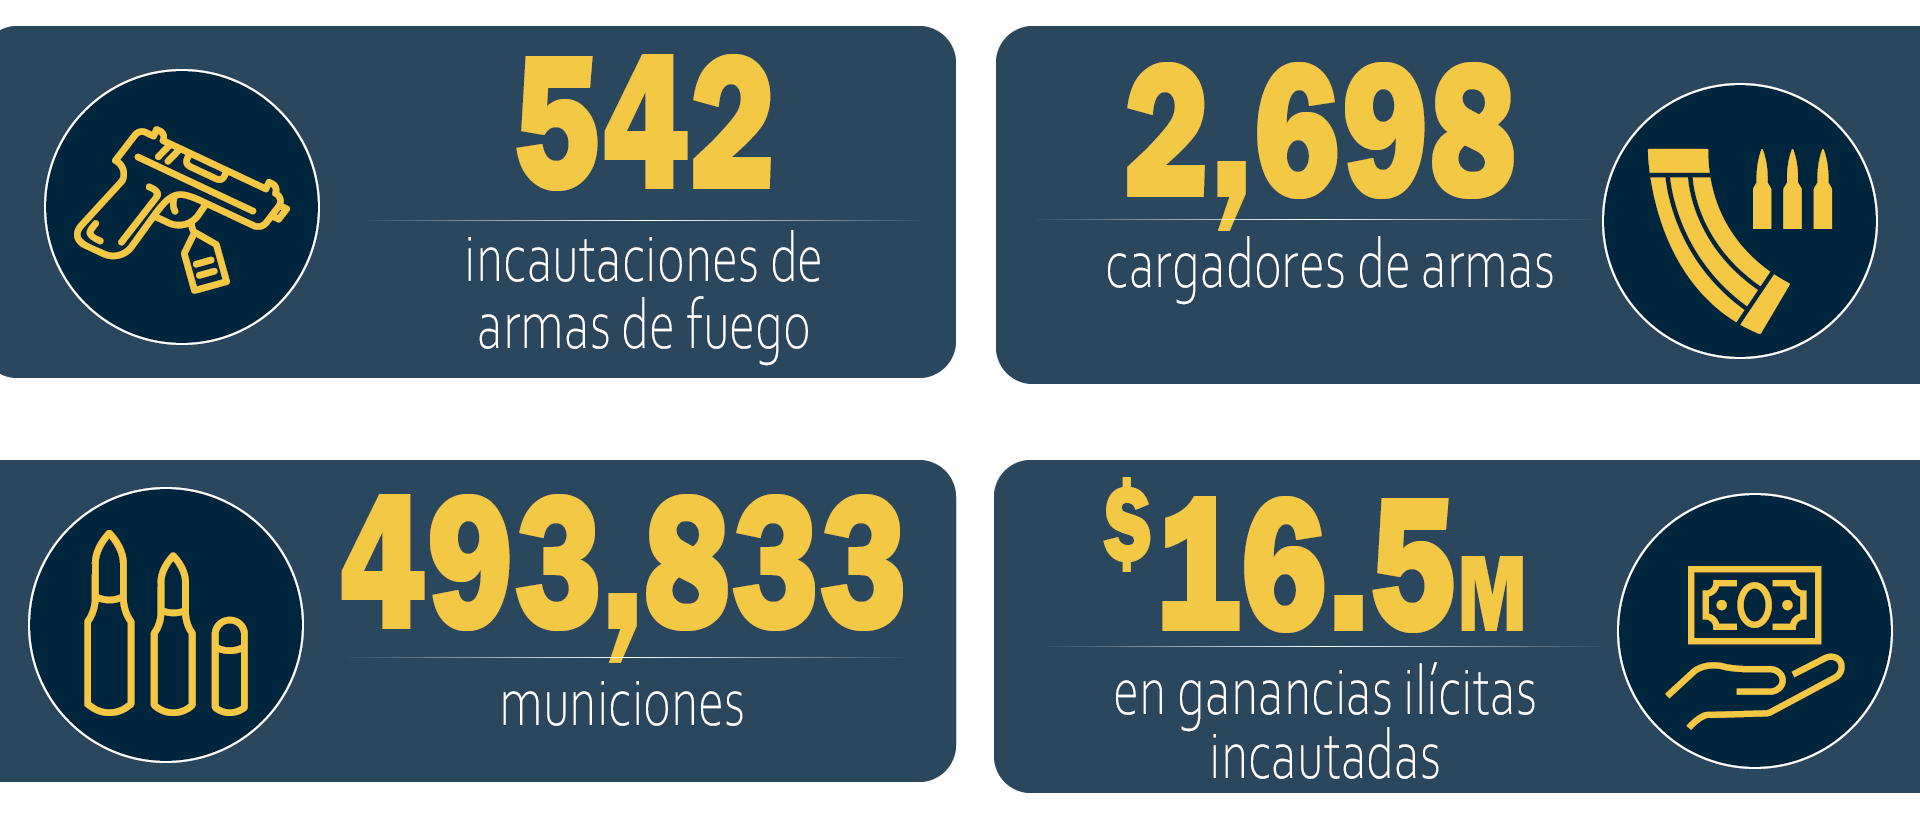 Operación Sin Rastro, resultados durante el año fiscal 2020: 542 incautaciones de armas de fuego; 2,698 cargadores de armas; 493,833 municiones; $16.5 millones en ganancias ilícitas incautadas.